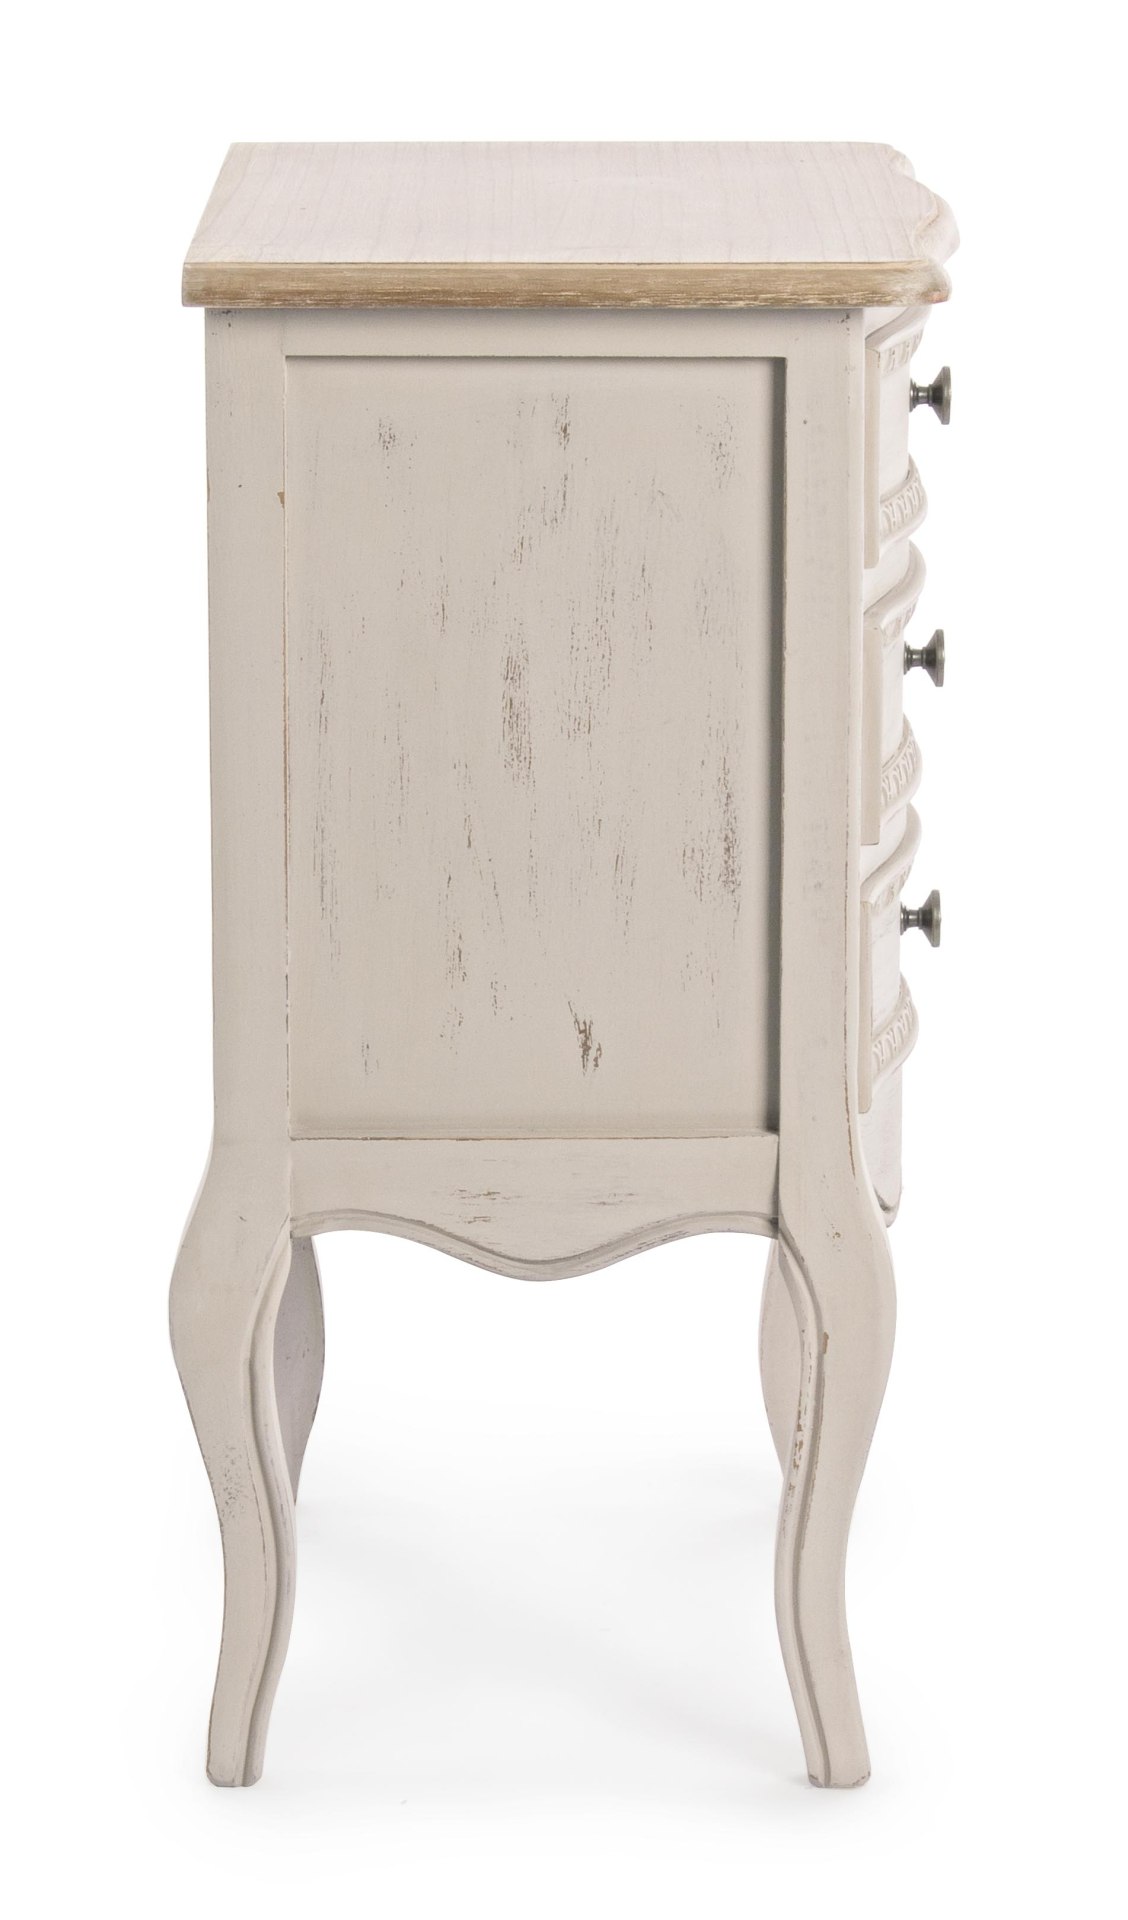 Der Nachttisch Clarissa überzeugt mit seinem klassischen Design. Gefertigt wurde er aus Paulowniaholz, welches einen grauen Farbton besitzt. Das Gestell ist auch aus Paulowniaholz. Der Nachttisch verfügt über drei Schubladen. Die Breite beträgt 48 cm.